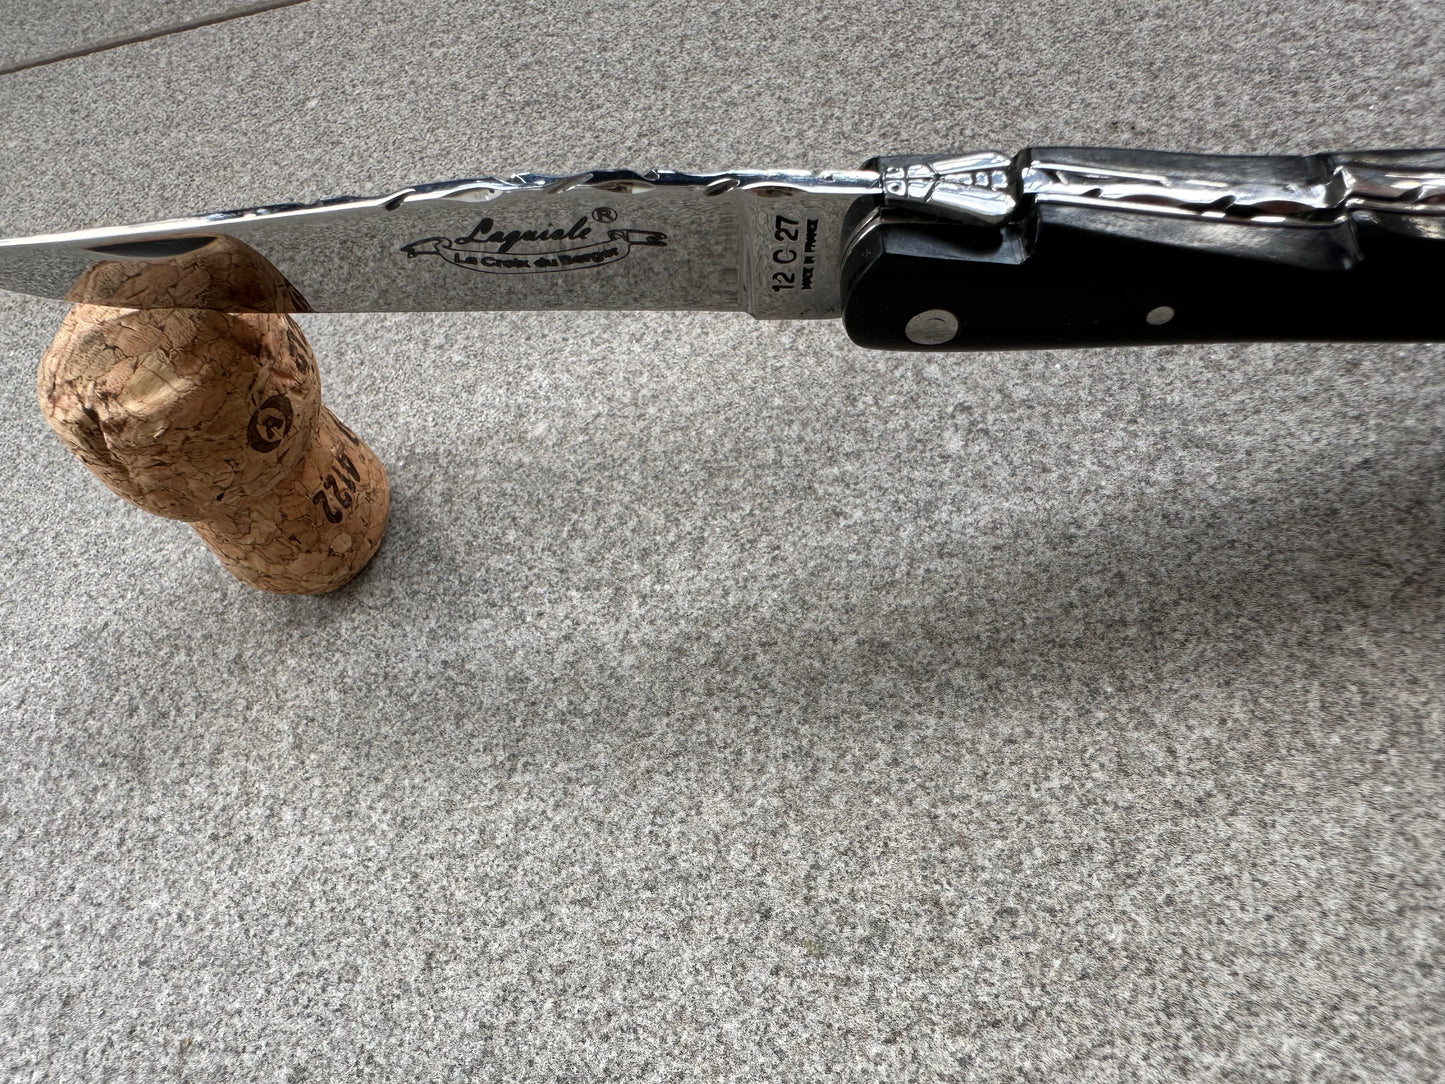 LAGUIOLE pocket knife "The Shepherd's Cross" in Ebony wood